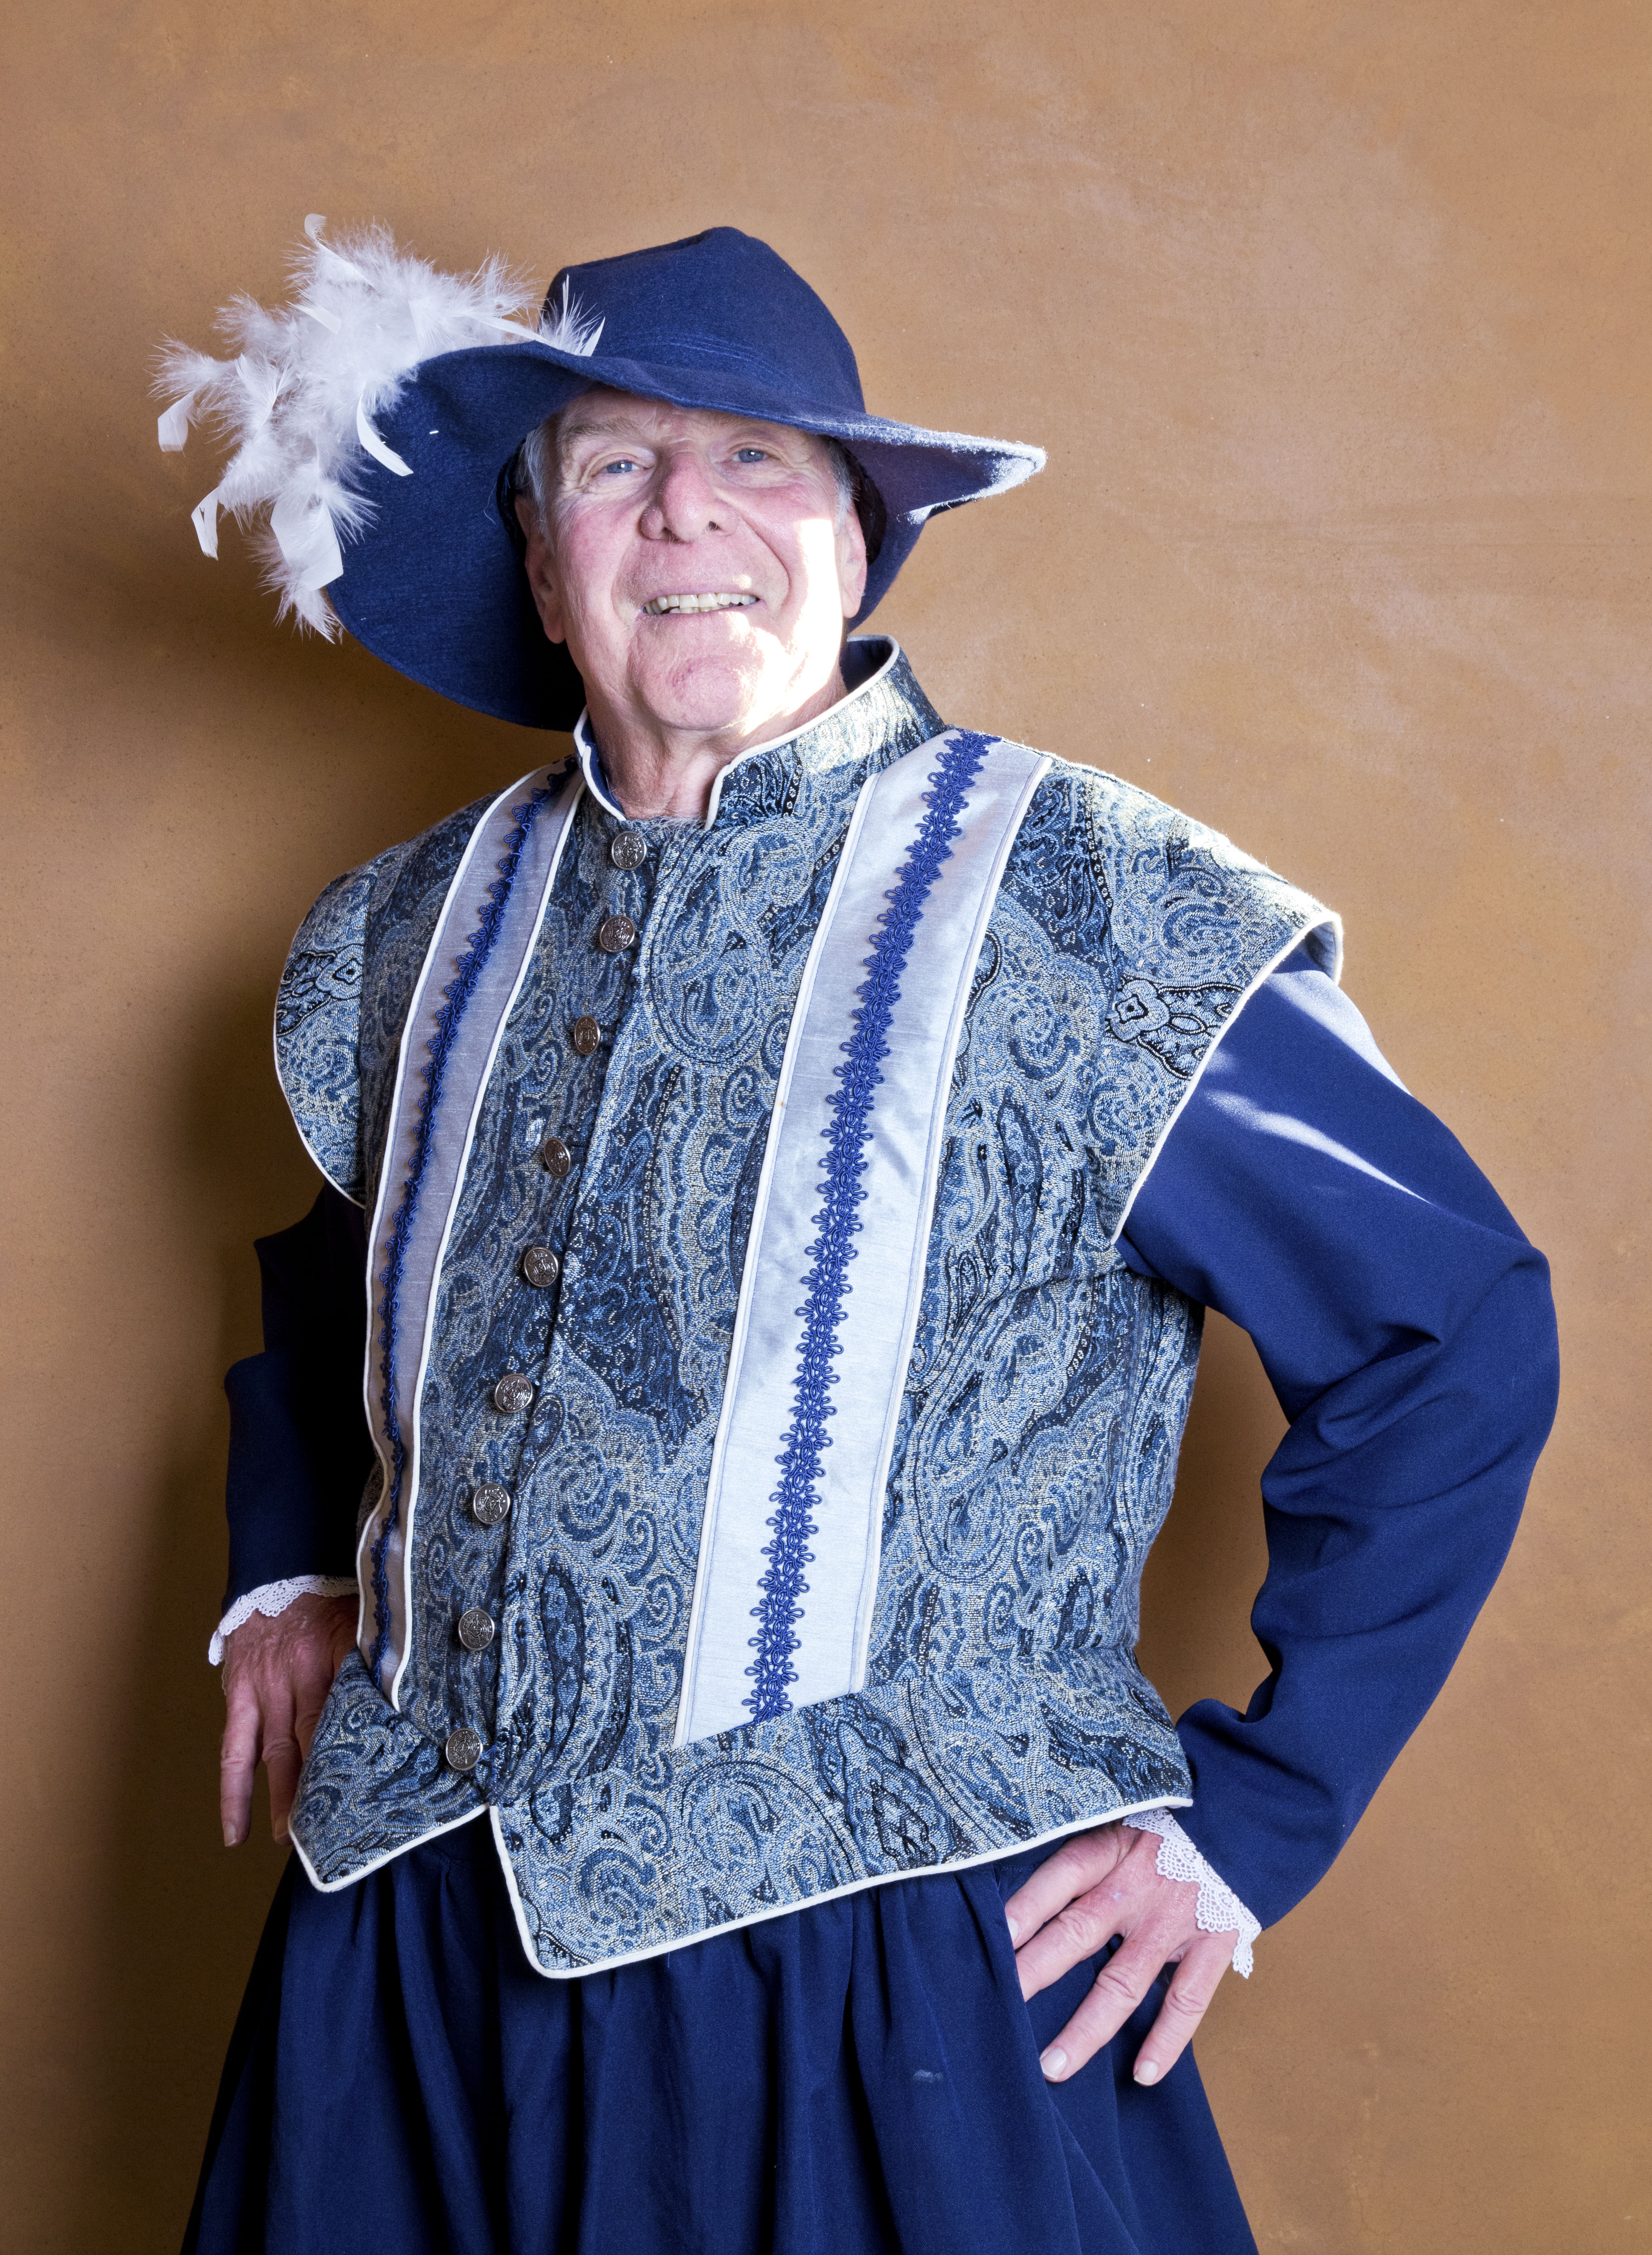 Richard Lederer dressed as William Shakespeare